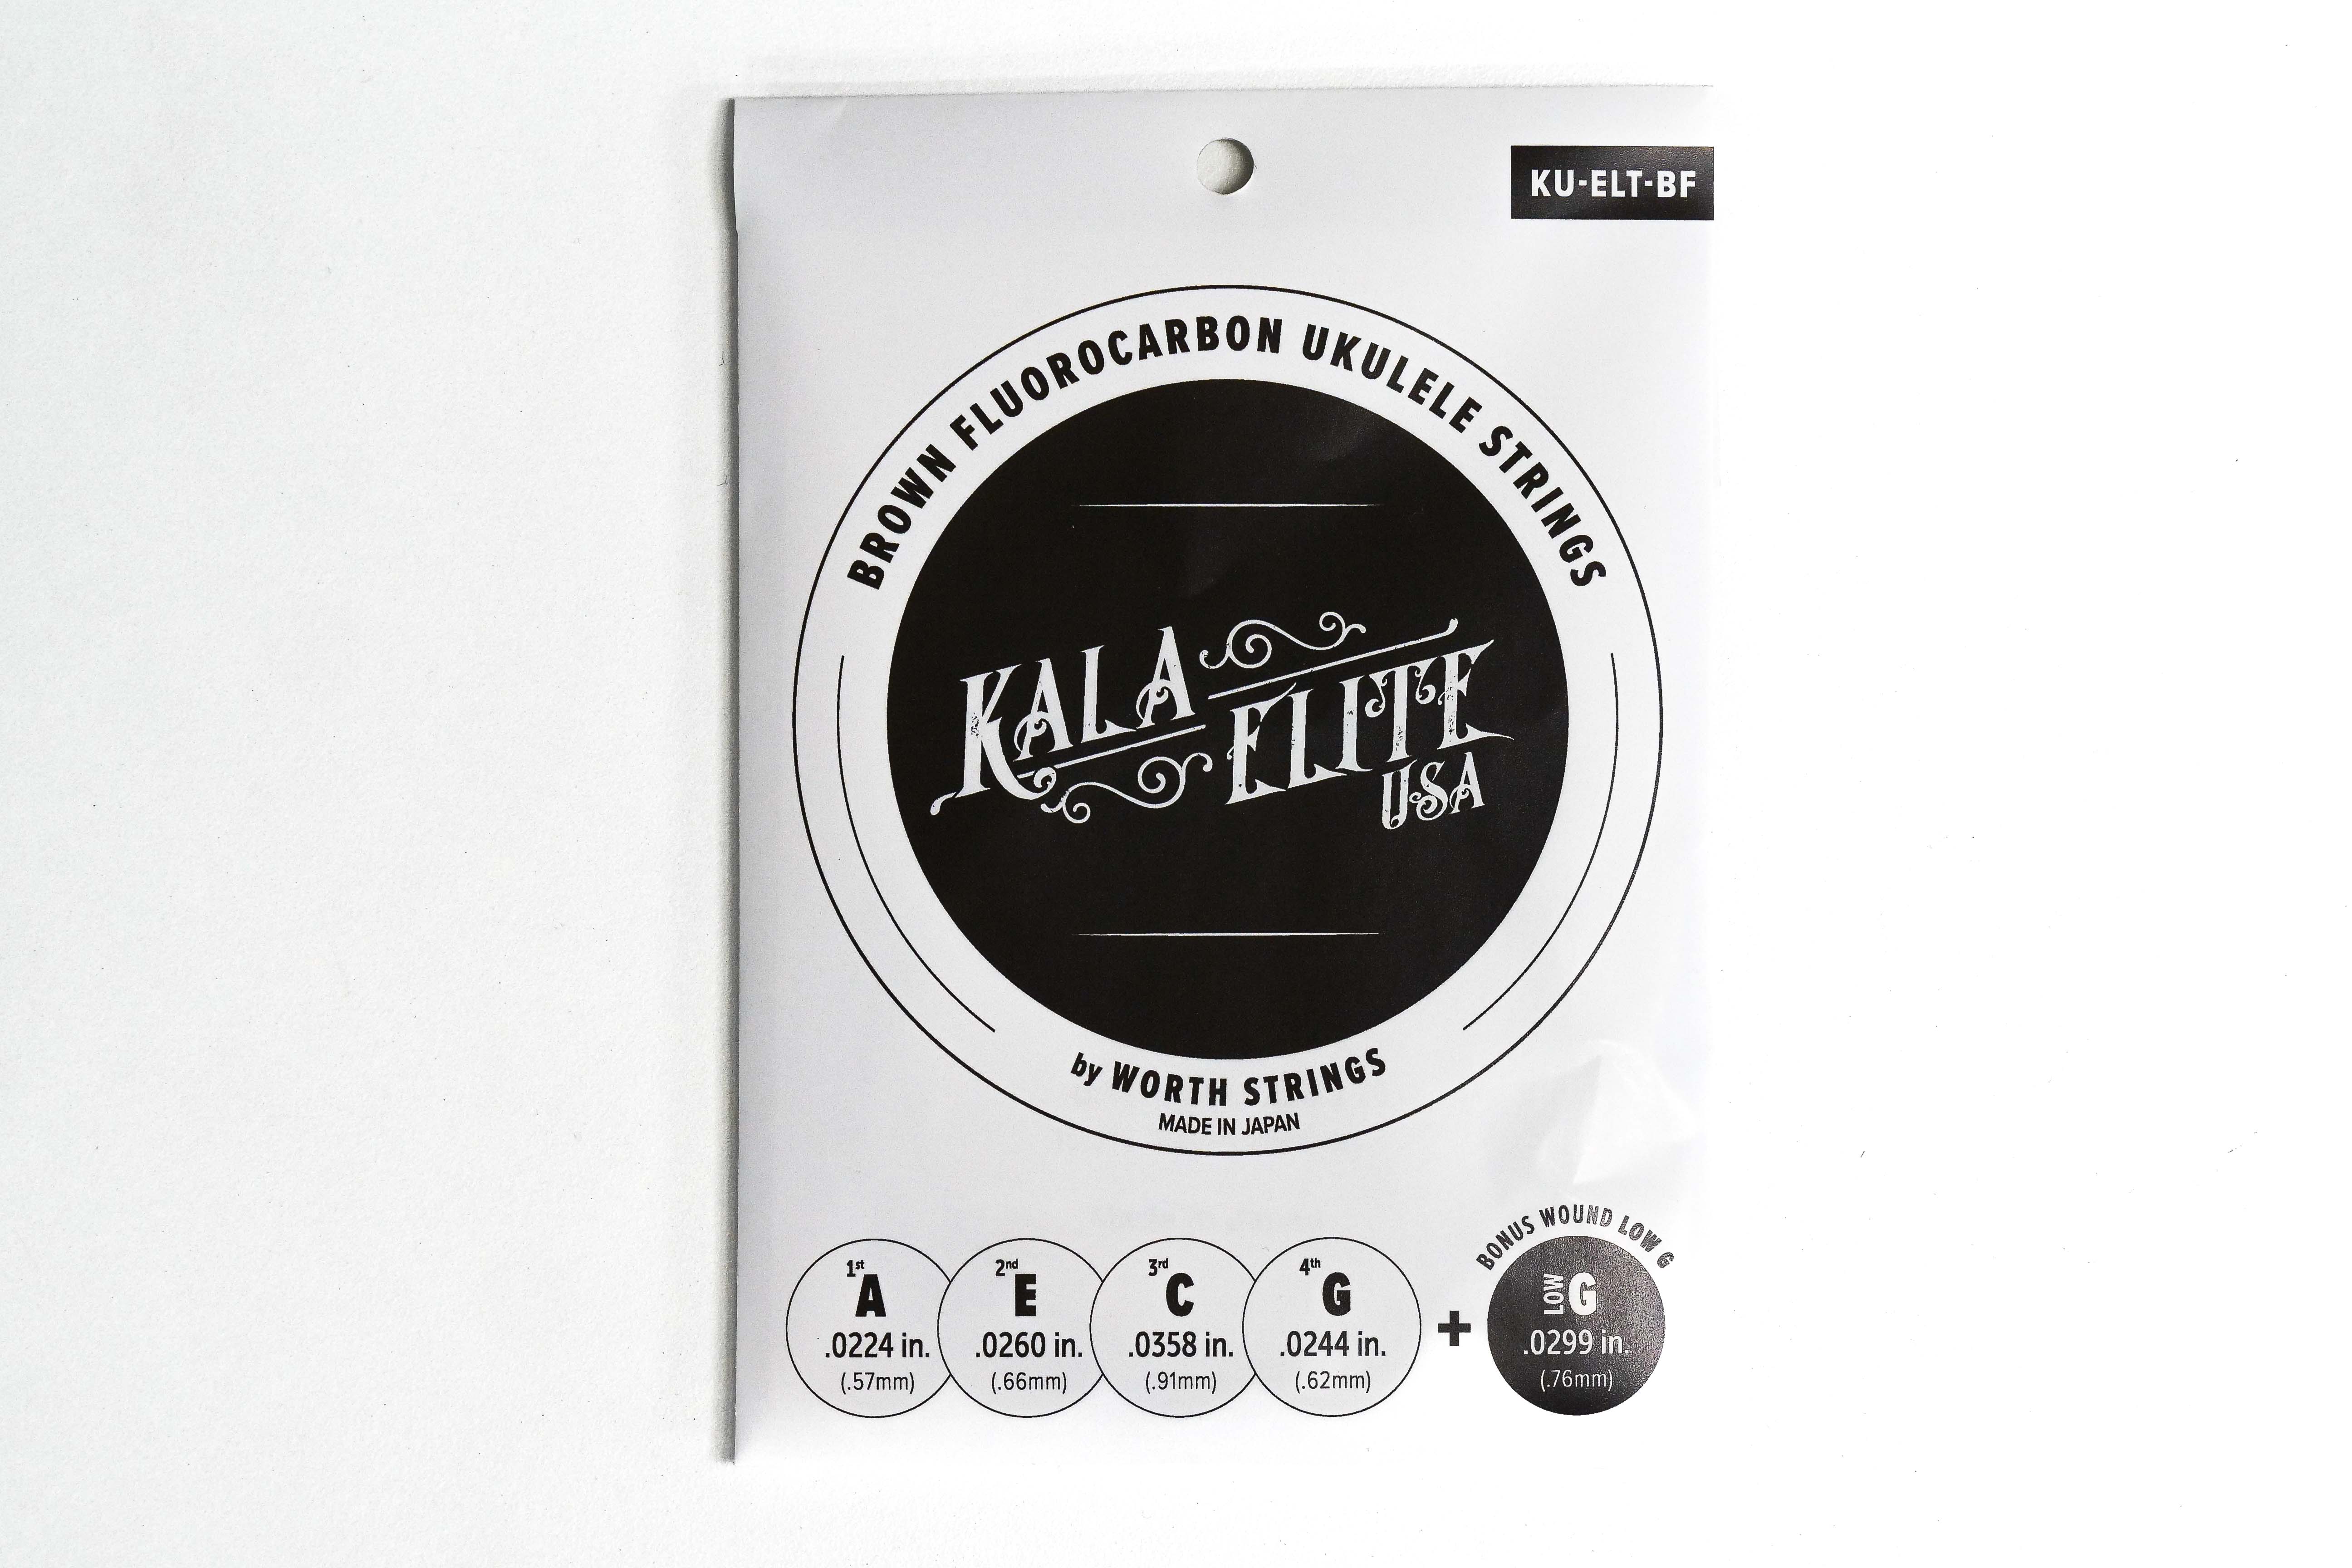 Kala Elite KU-ELT-BF Brown Flourocarbon Ukulele Strings TENOR LOW G & HIGH G INCLUDED